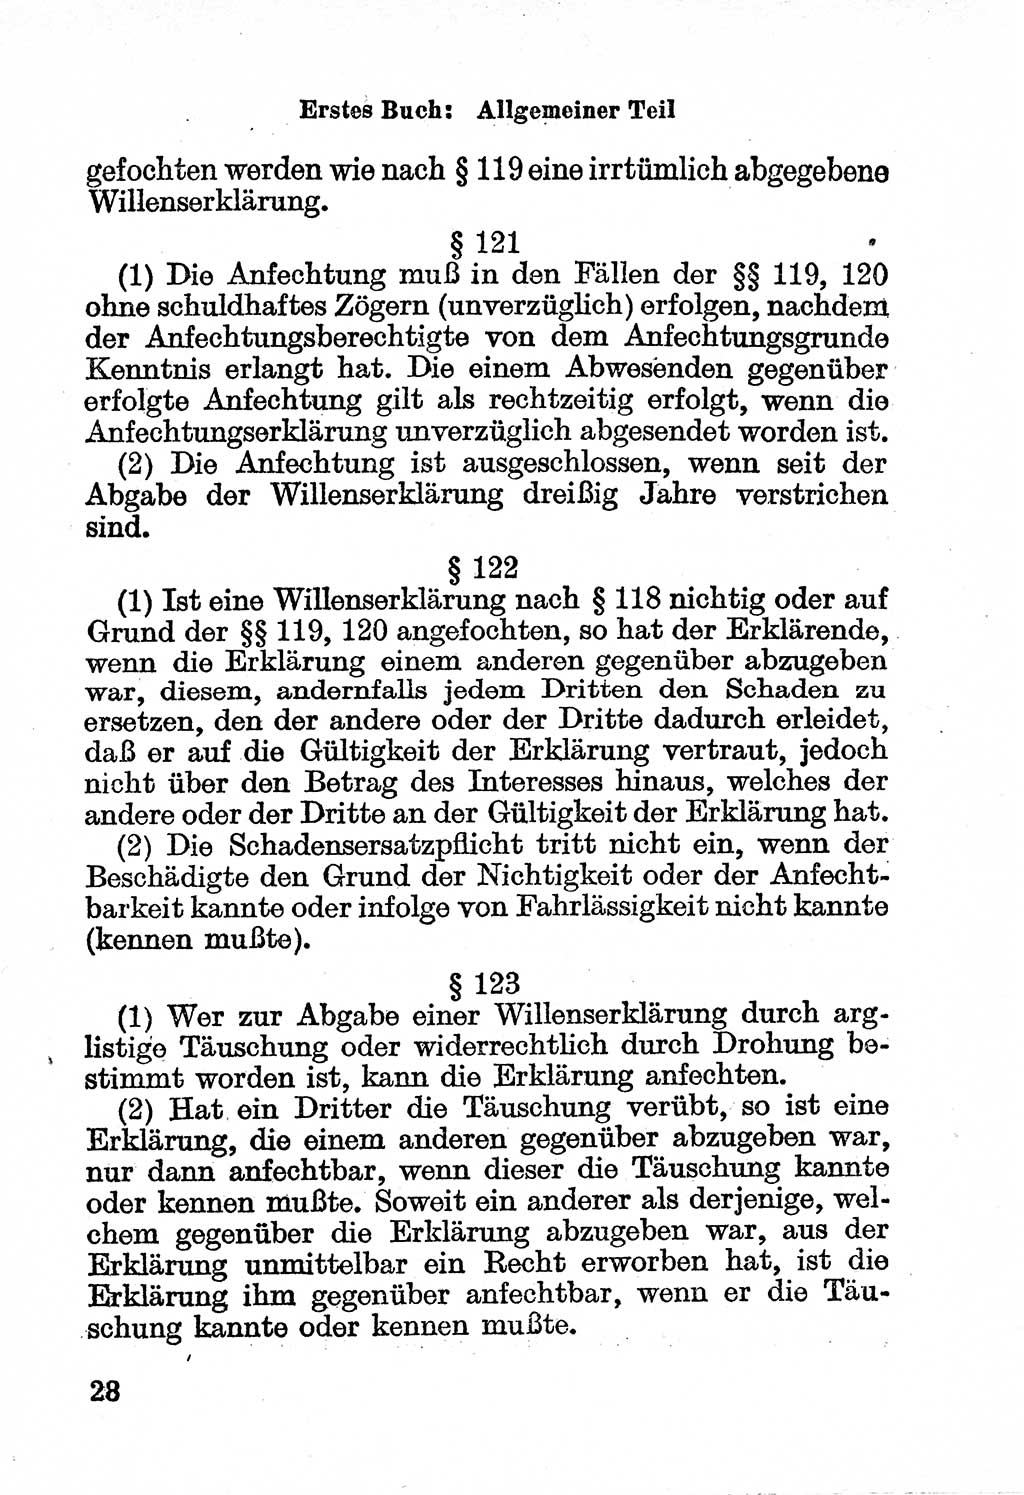 Bürgerliches Gesetzbuch (BGB) nebst wichtigen Nebengesetzen [Deutsche Demokratische Republik (DDR)] 1956, Seite 28 (BGB Nebenges. DDR 1956, S. 28)